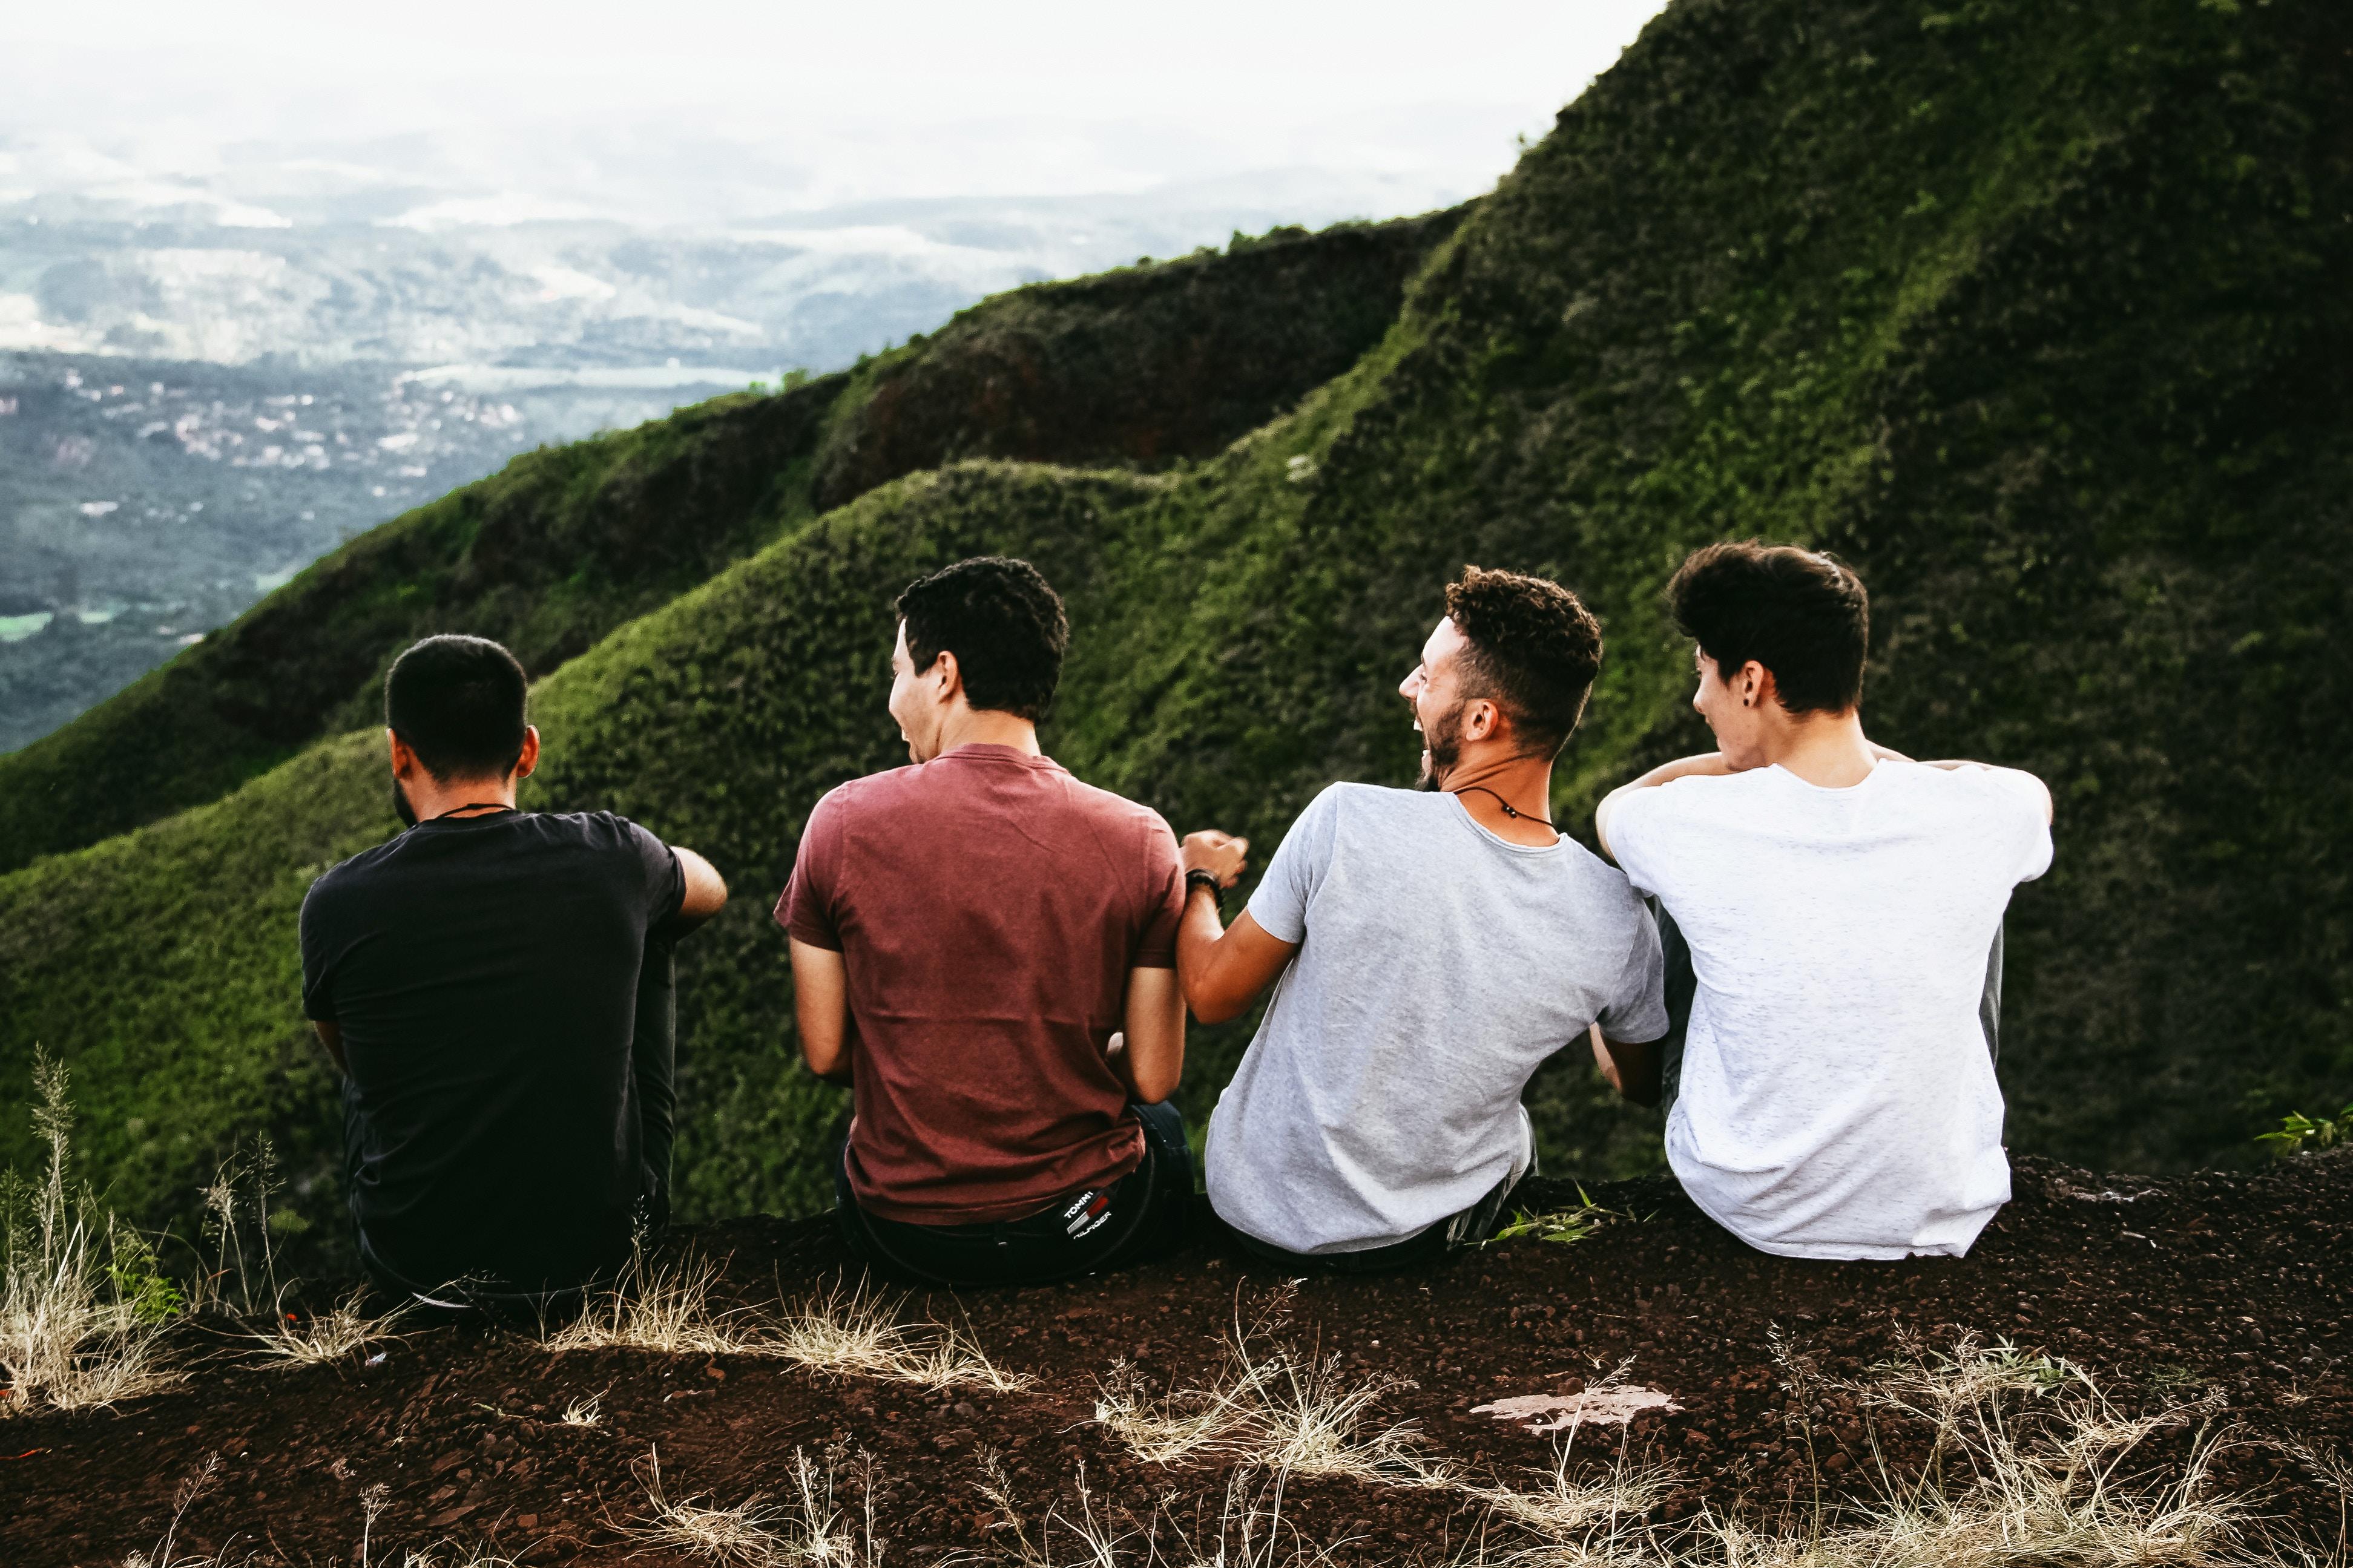 Czterech młodych mężczyzn siedzi na skraju zbocza, widać, że dobrze się bawią i są zrelaksowani.